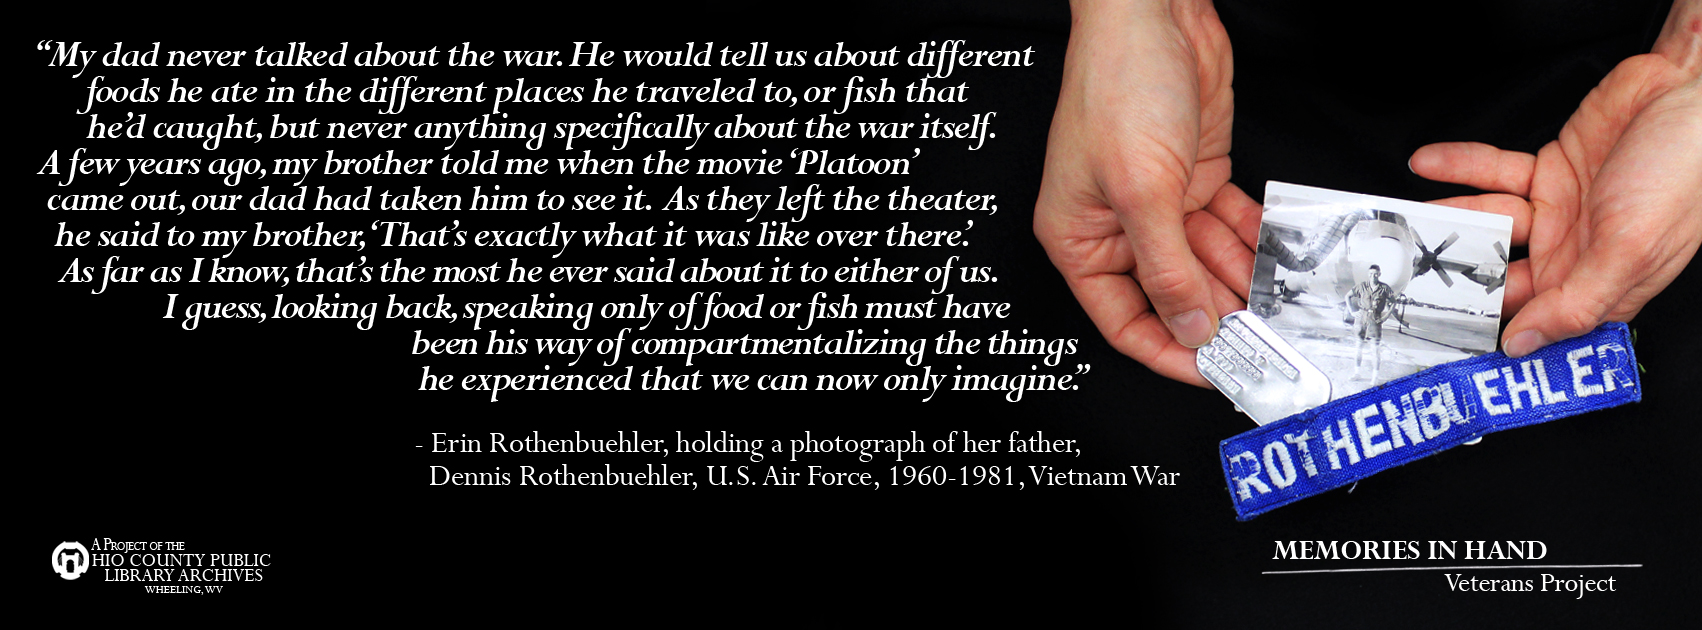 Dennis Rothenbuehler, U.S. Air Force, 1960-1981, Vietnam War Veteran